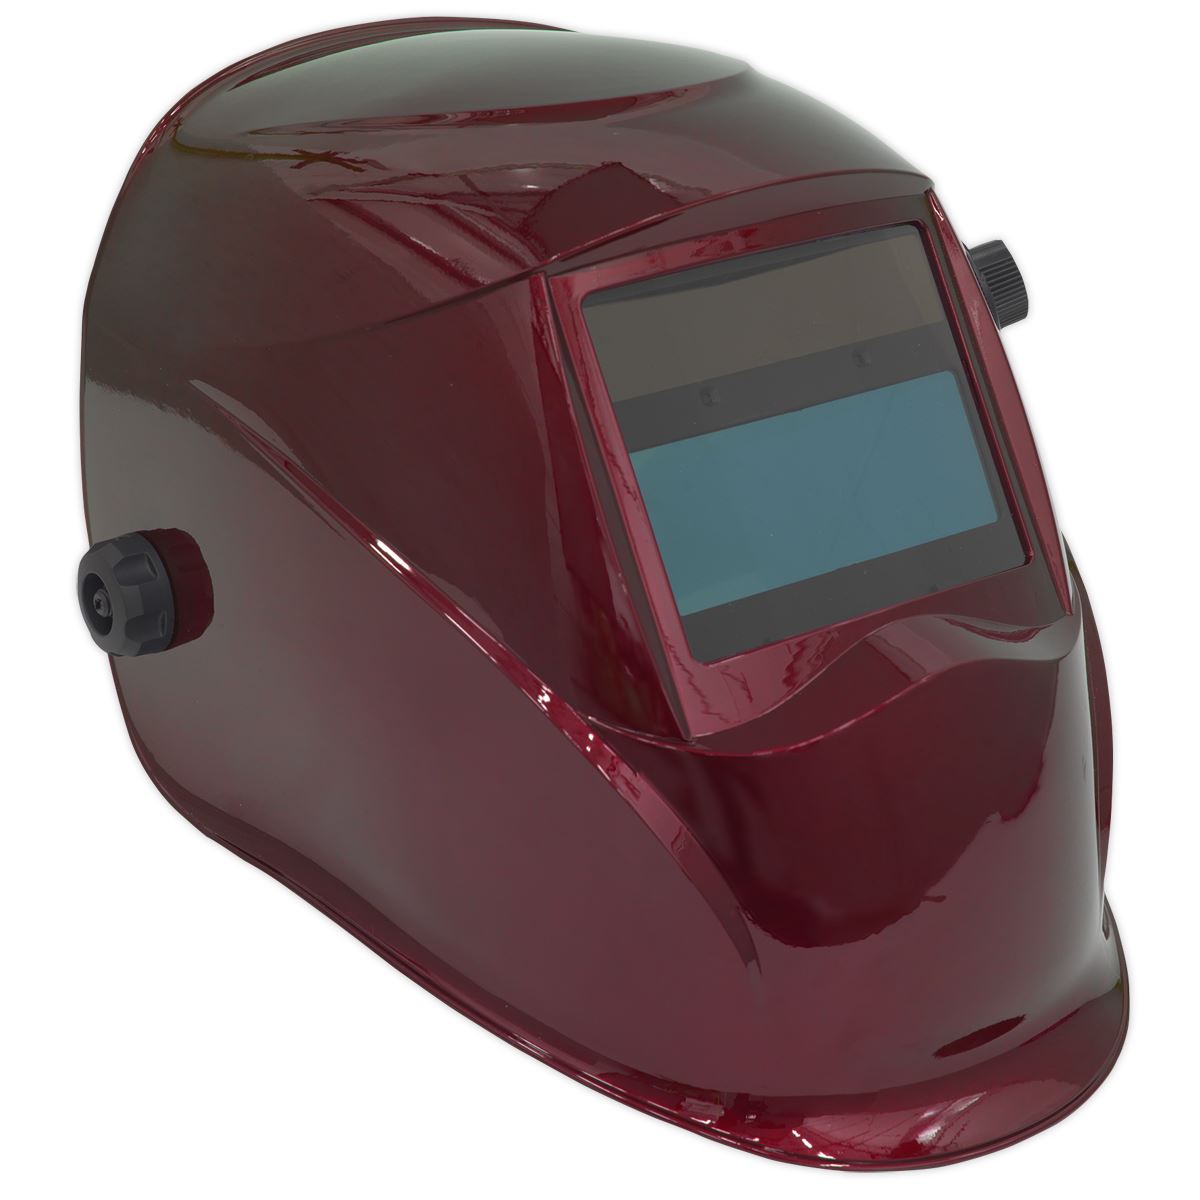 Sealey Welding Helmet Auto Darkening - Shade 9-13 - Red